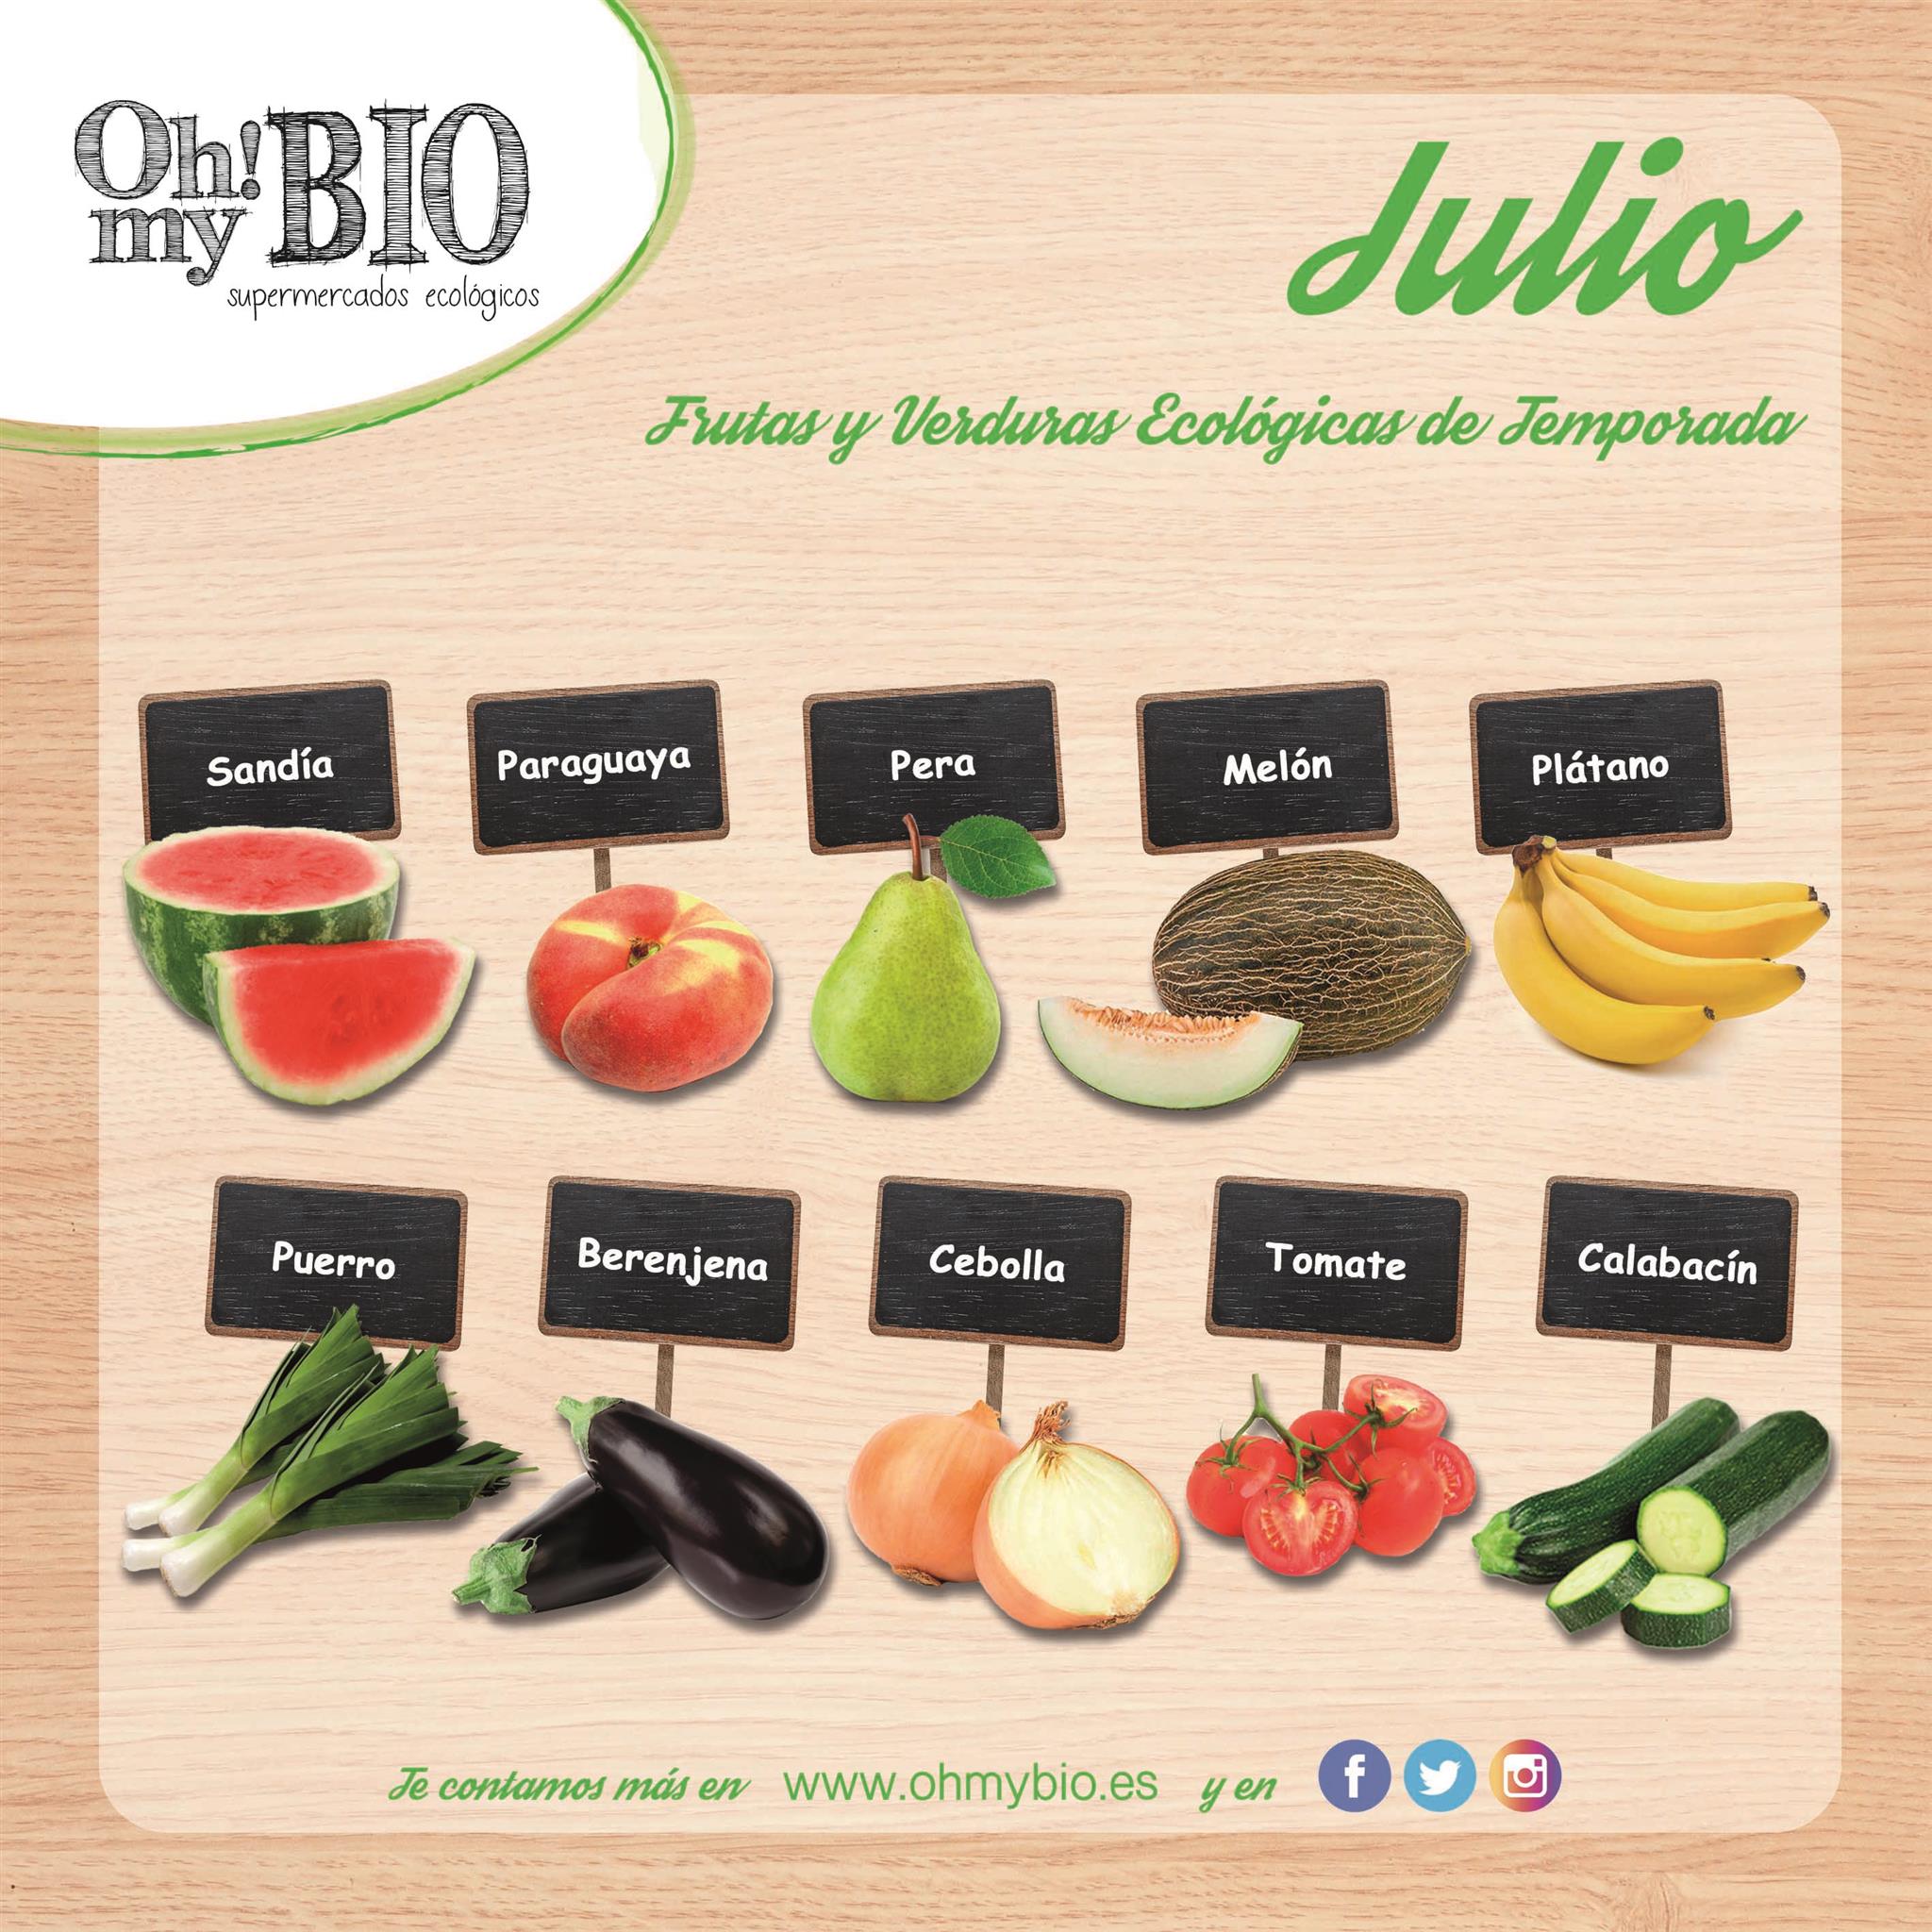 Frutas y verduras en temporada de julio